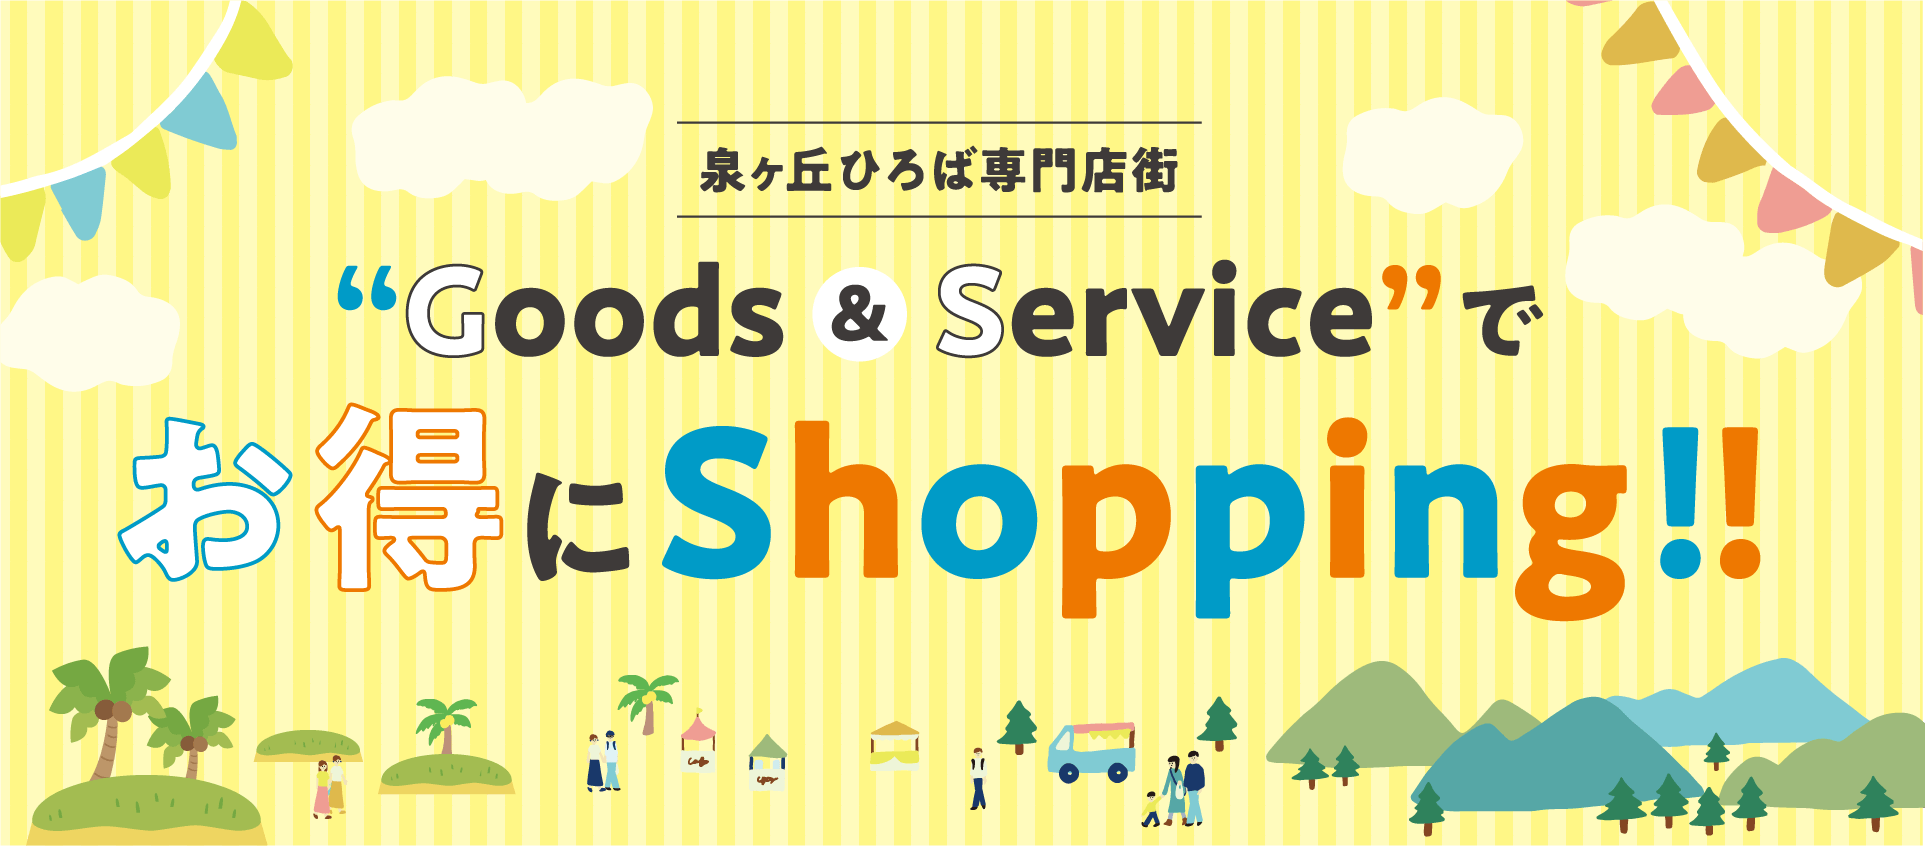 泉ヶ丘ひろば専門店街 “Goods & Service”でお得にShopping!!